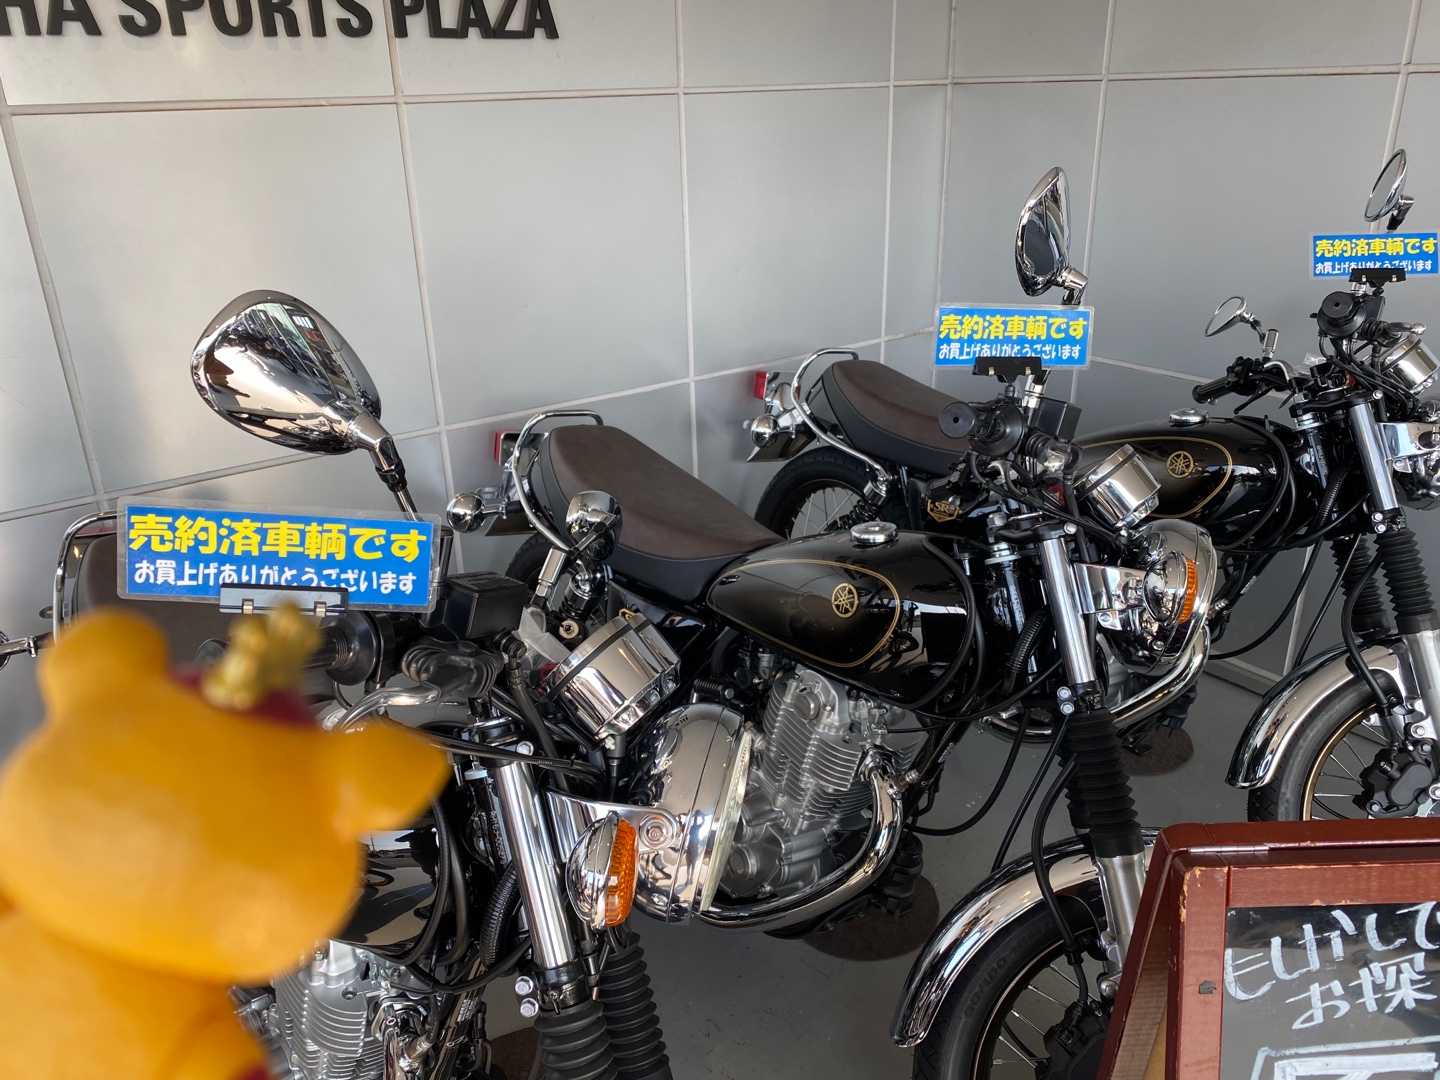 豊川 ysp YSP豊川 販売中の新車・中古バイクの一覧を見る｜【ウェビック